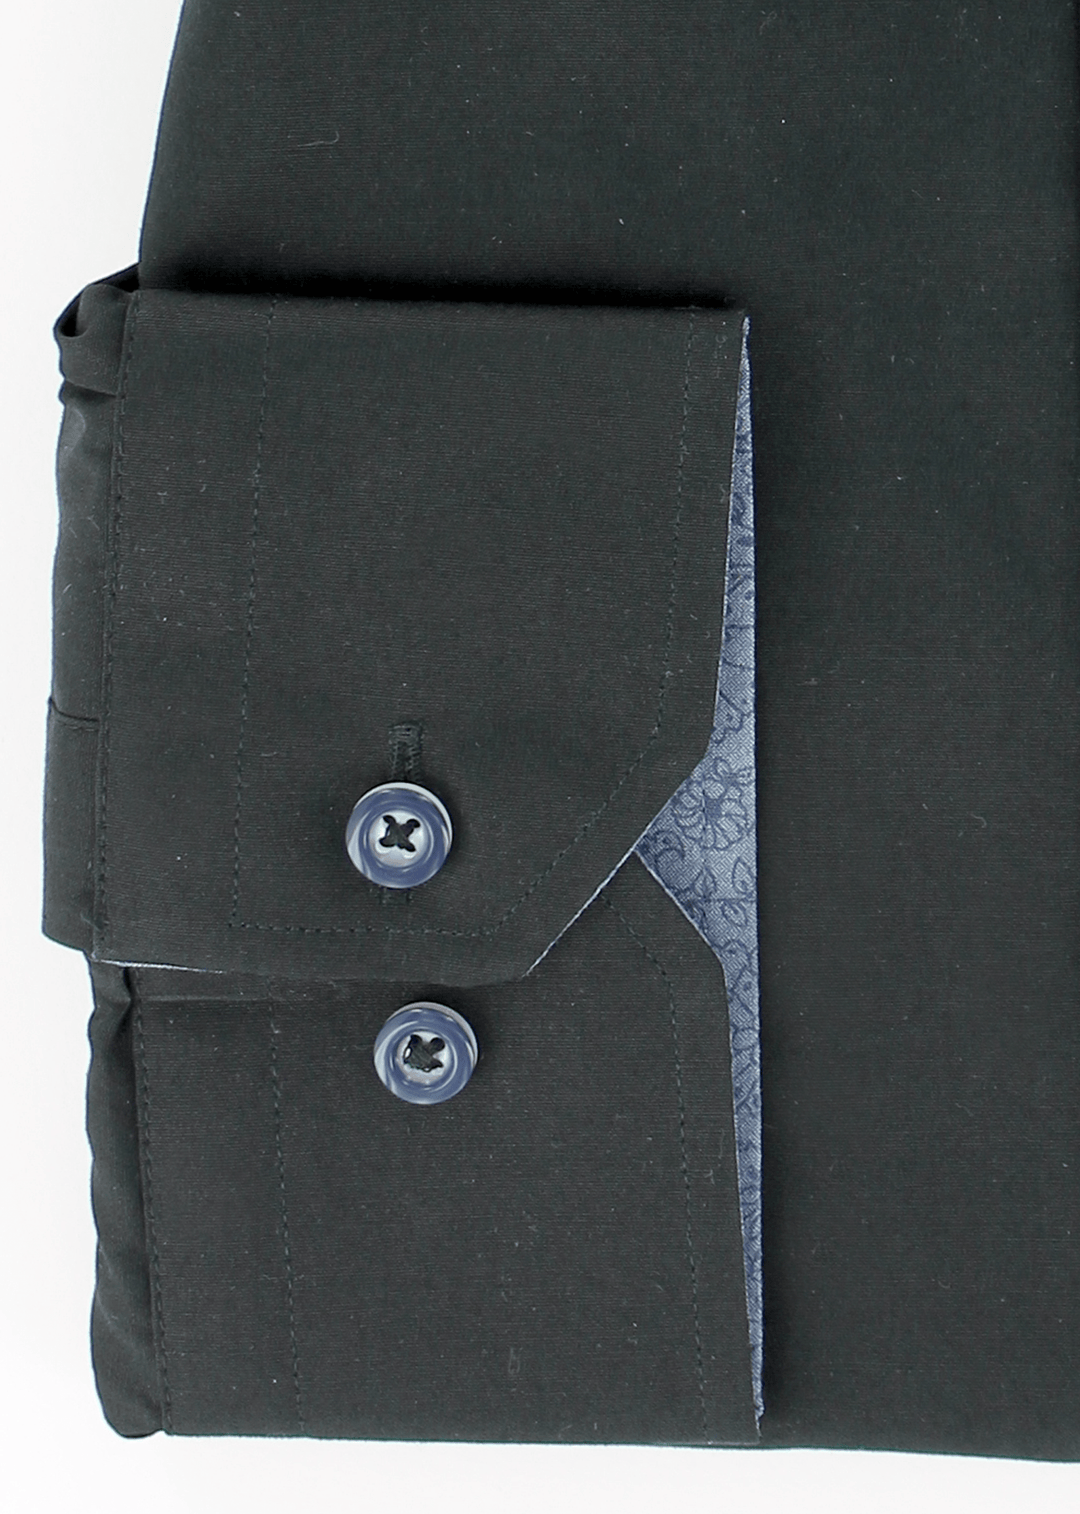 Poignets simples réglables de couleur noire opposition à motifs bleu ciel | Cotton Park